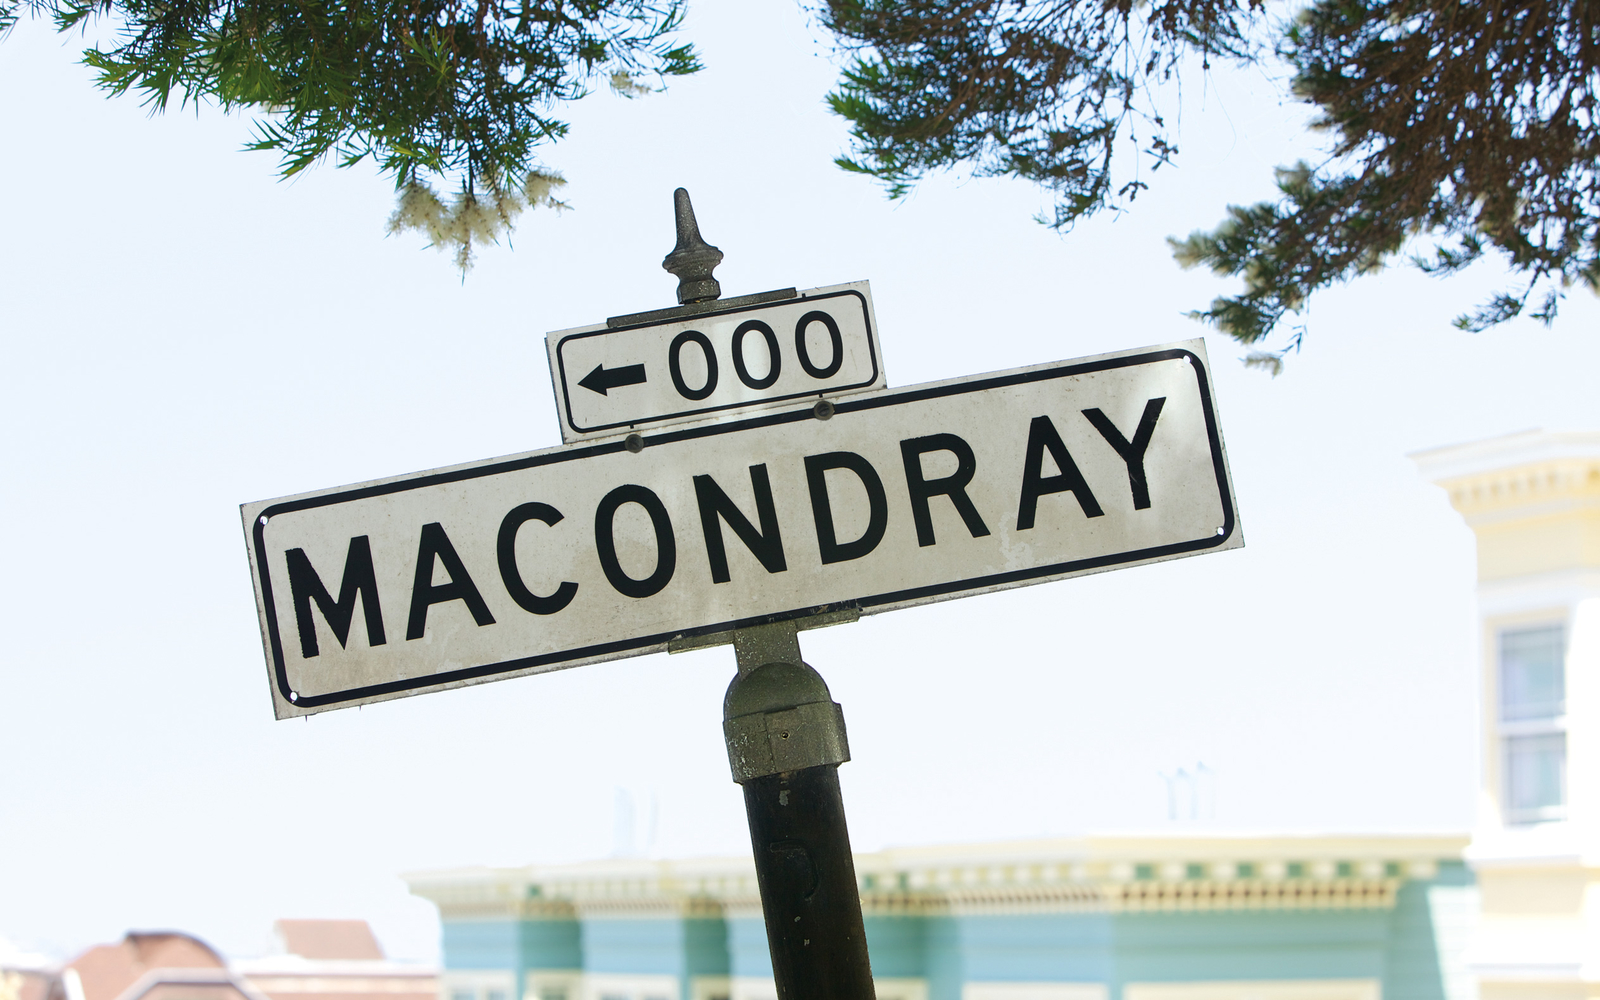 Macondray Street in San Francisco